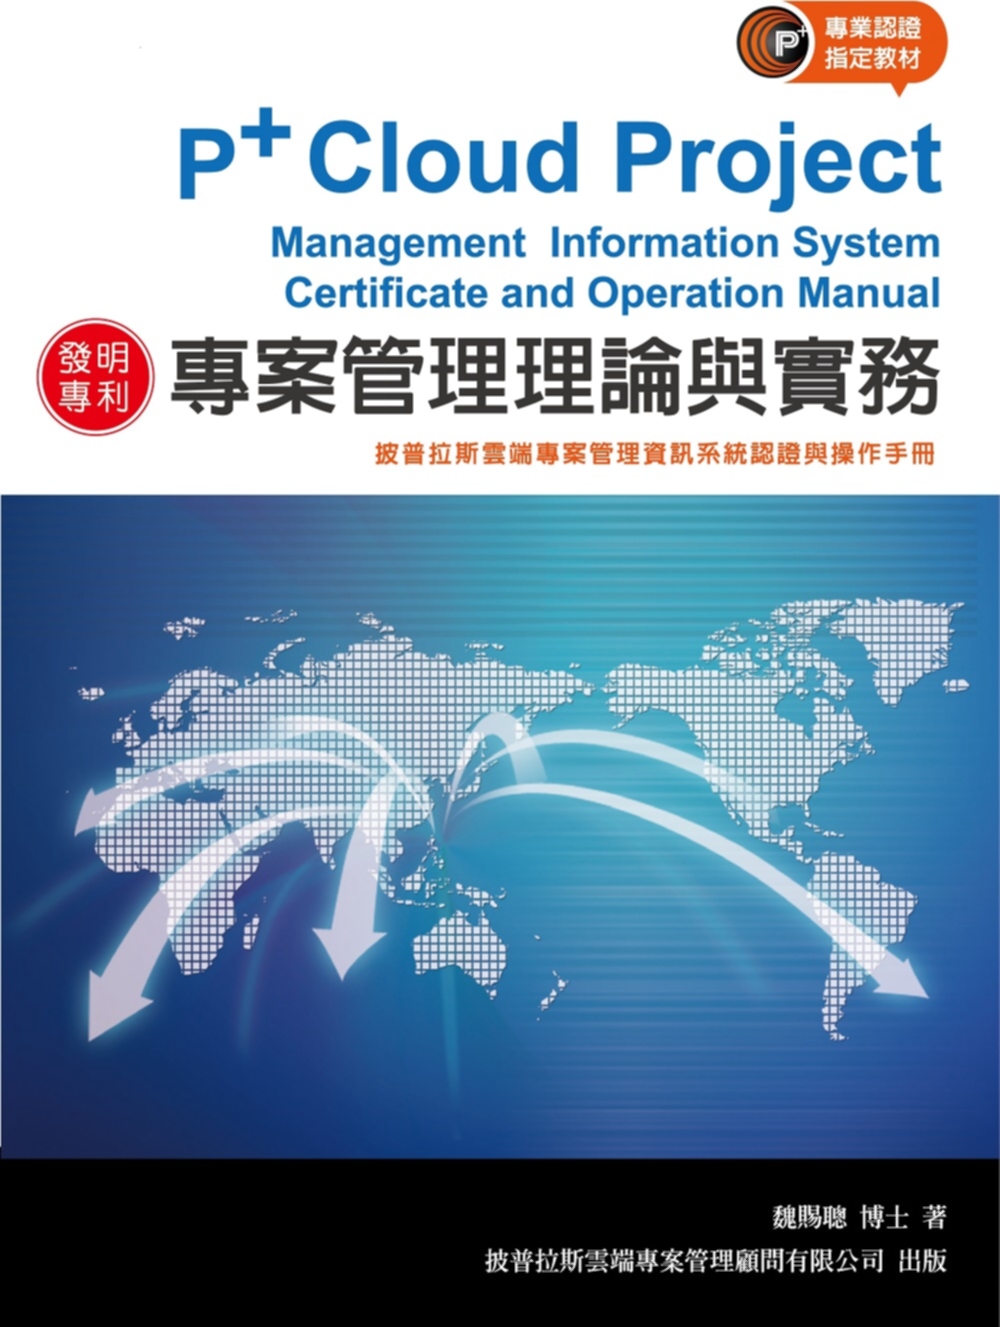 專案管理理論與實務：披普拉斯雲端專案管理資訊系統認證與操作手...